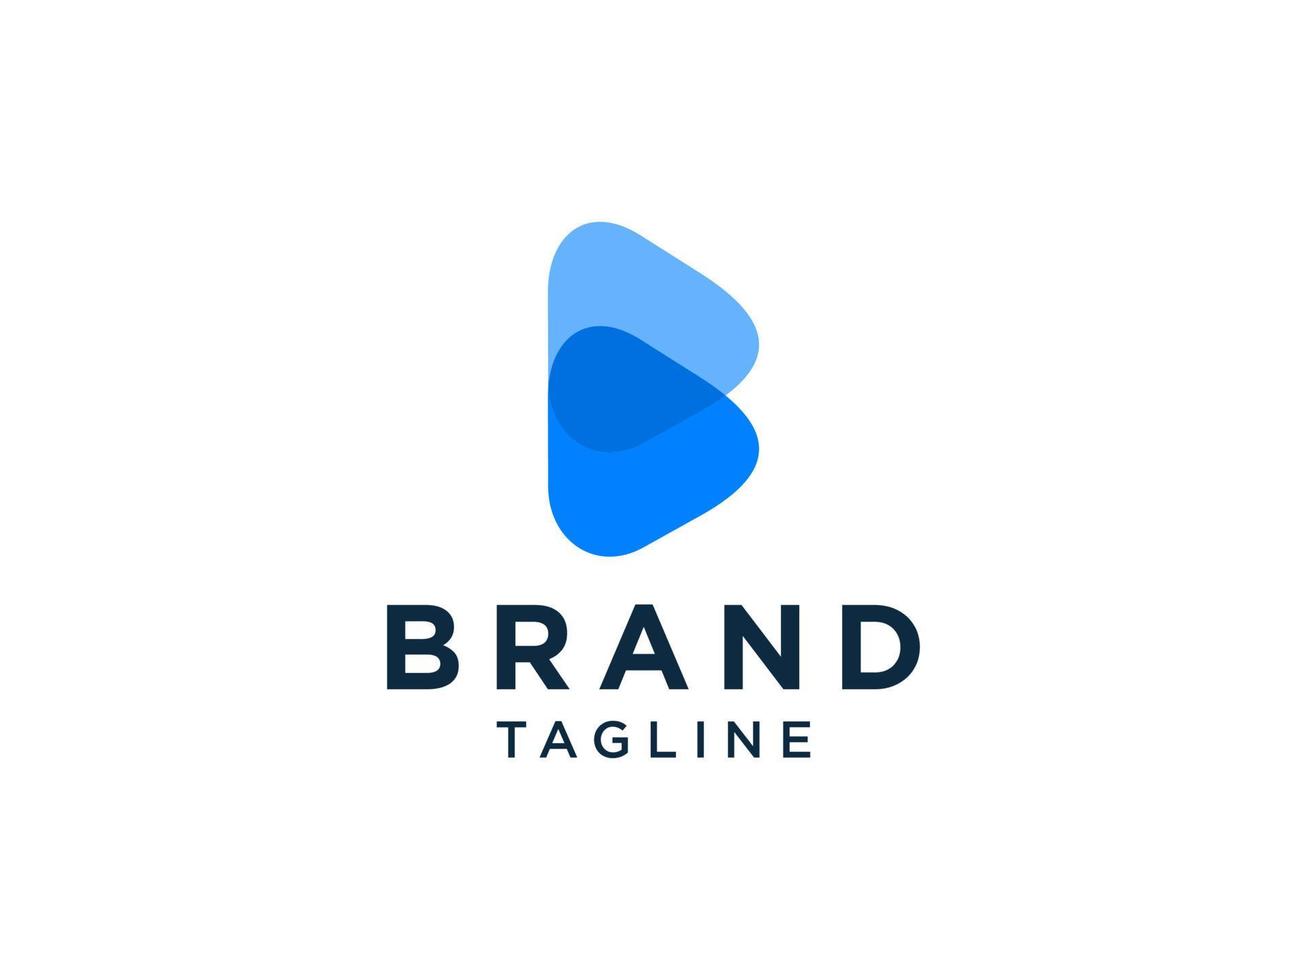 eerste letter b-logo. blauwe origami stijl met schaduw geïsoleerd op een witte achtergrond. bruikbaar voor bedrijfs- en merklogo's. platte vector logo-ontwerpsjabloon sjabloon.